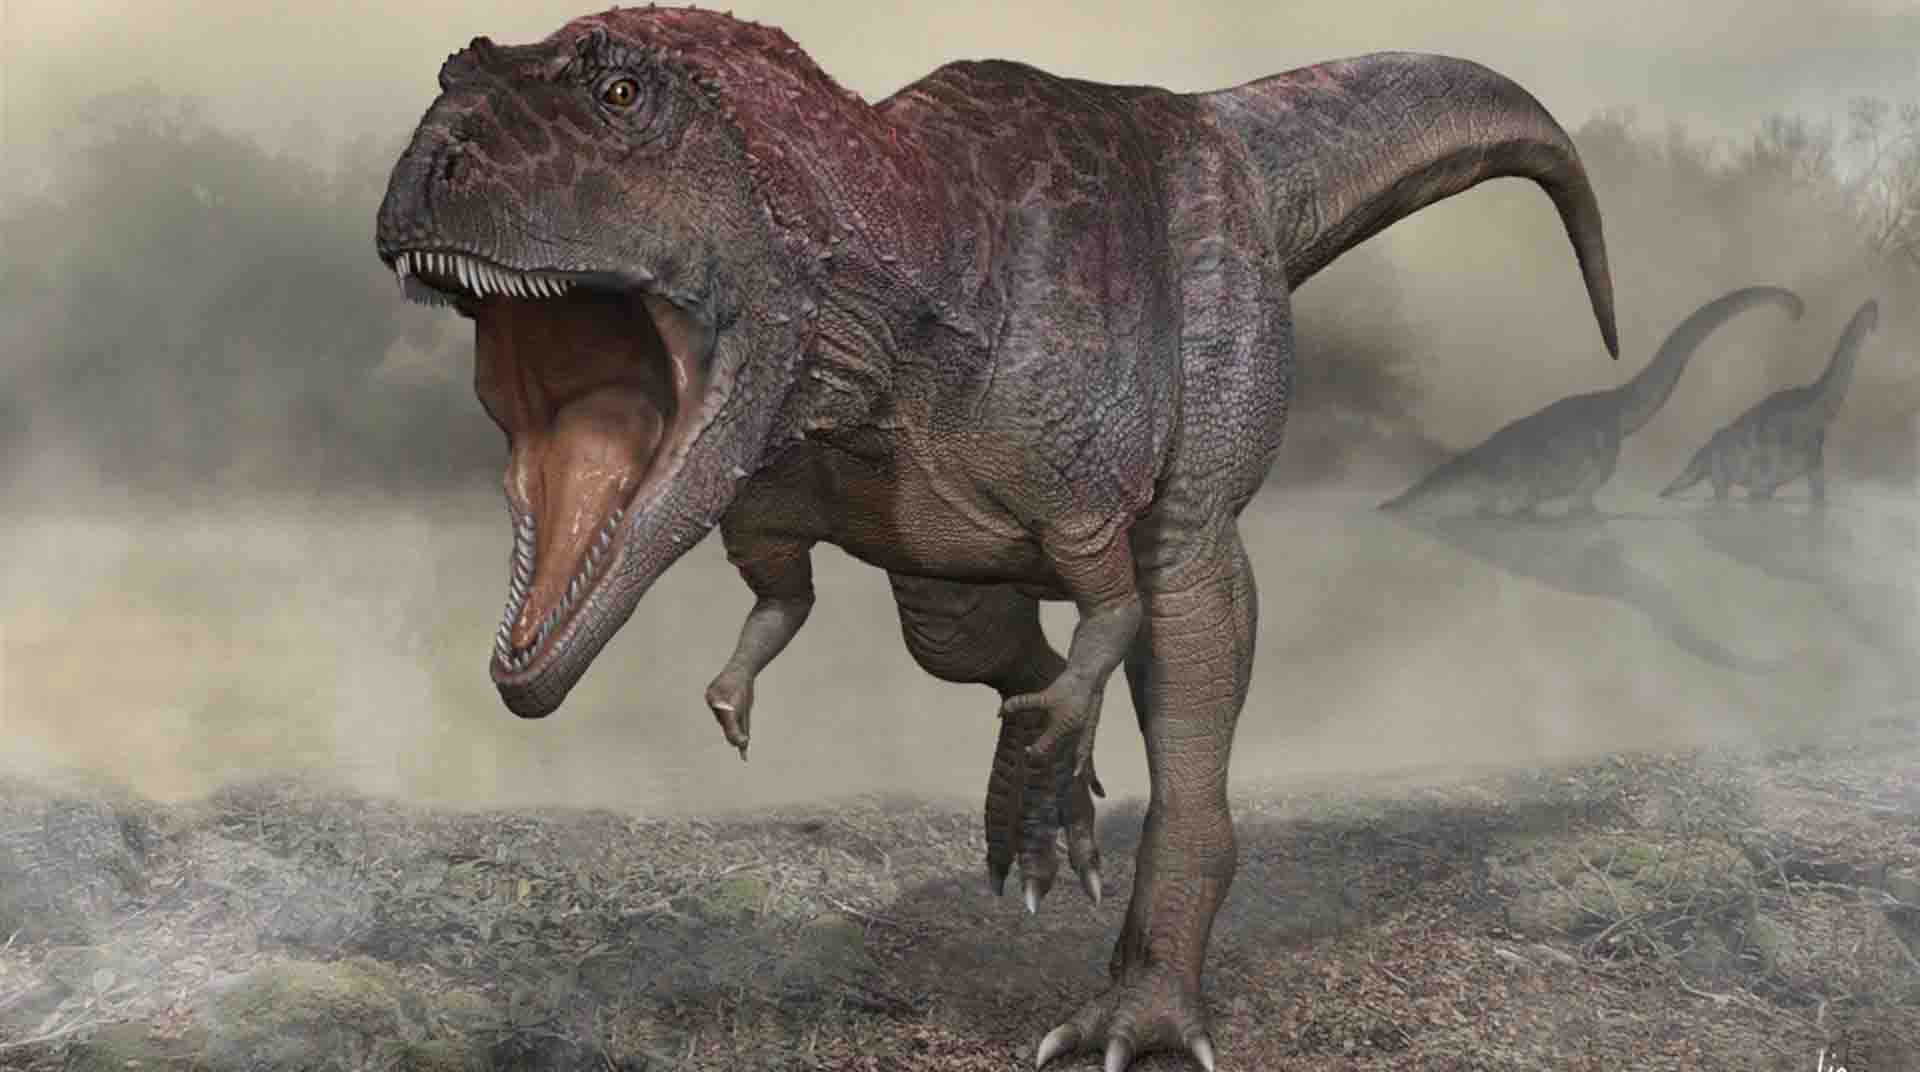 Representación artística del Meraxes gigas, una nueva especie de dinosaurio con brazos diminutos y unas cuatro toneladas de peso hallado en la Patagonia argentina. Foto: EFE.